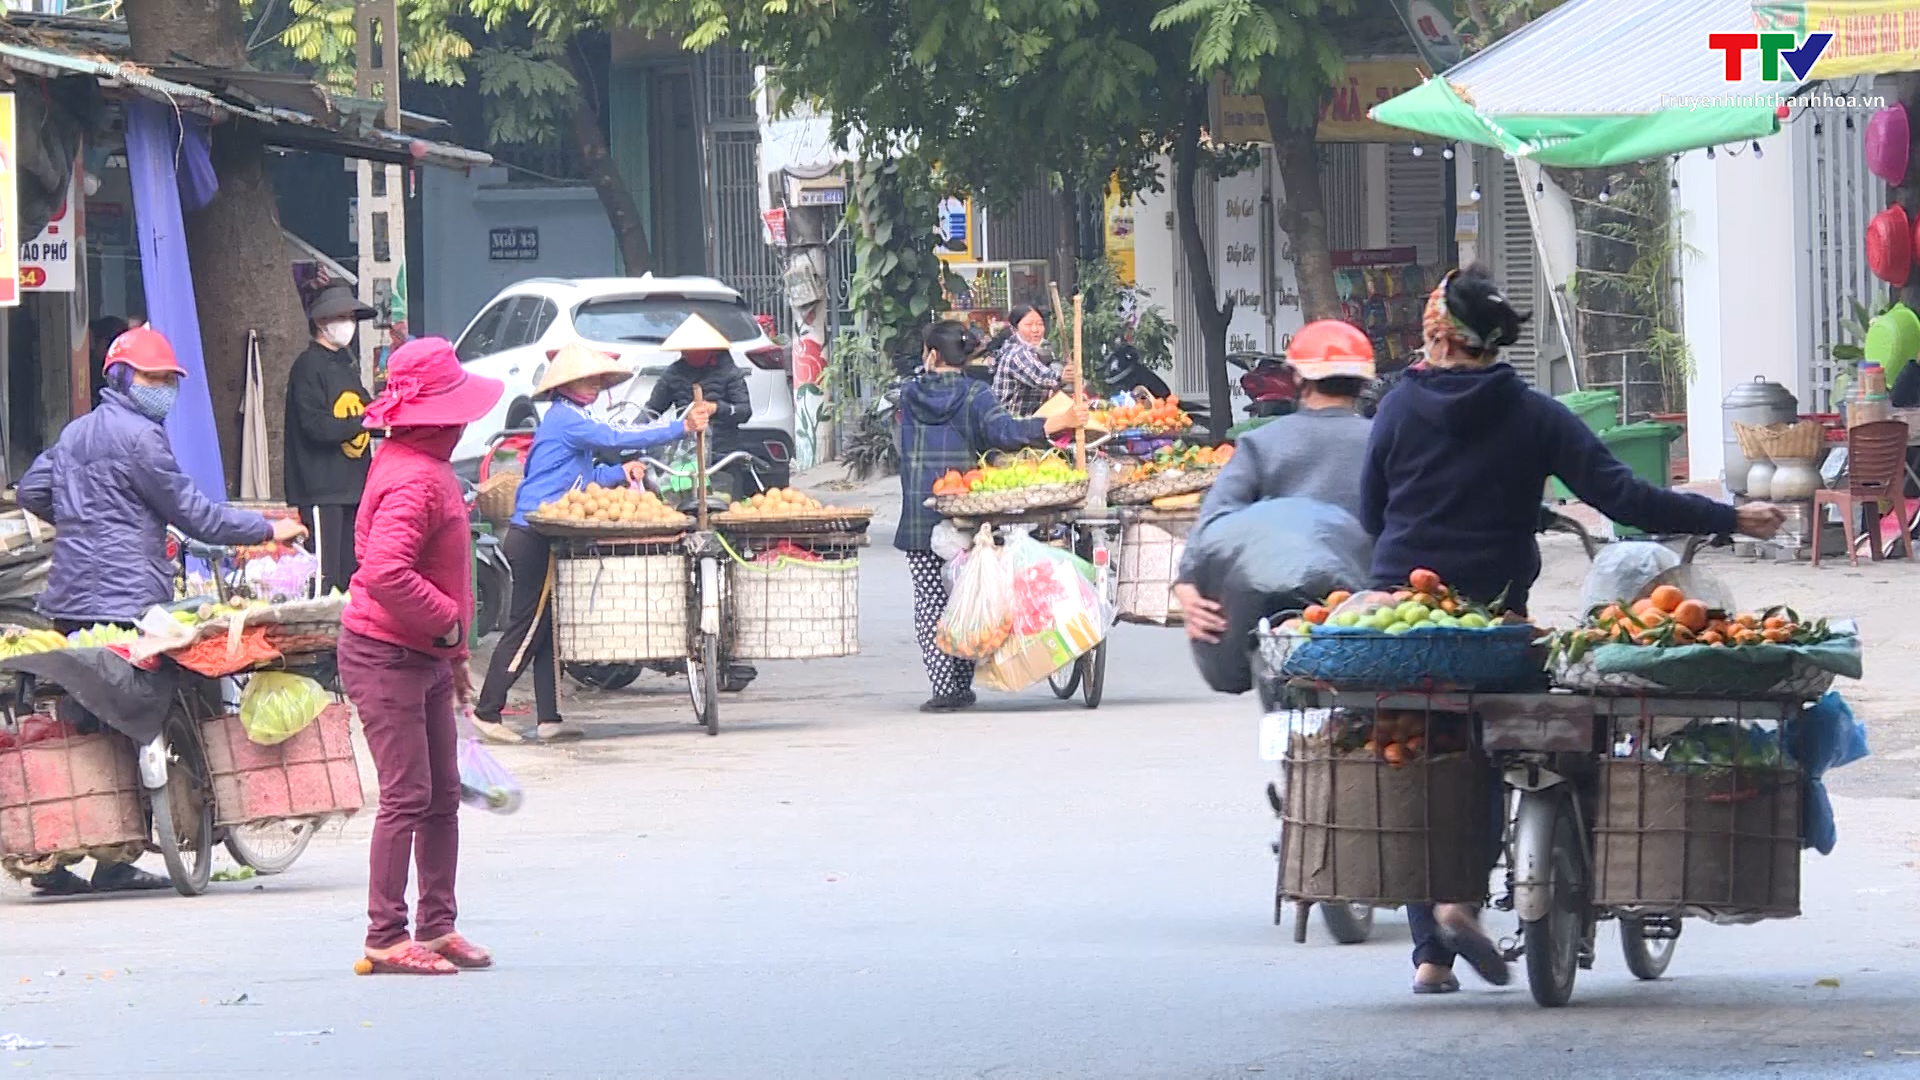 Cần sớm có giải pháp xóa bỏ “chợ cóc”, chợ tạm trên địa bàn thành phố Thanh Hóa  - Ảnh 6.